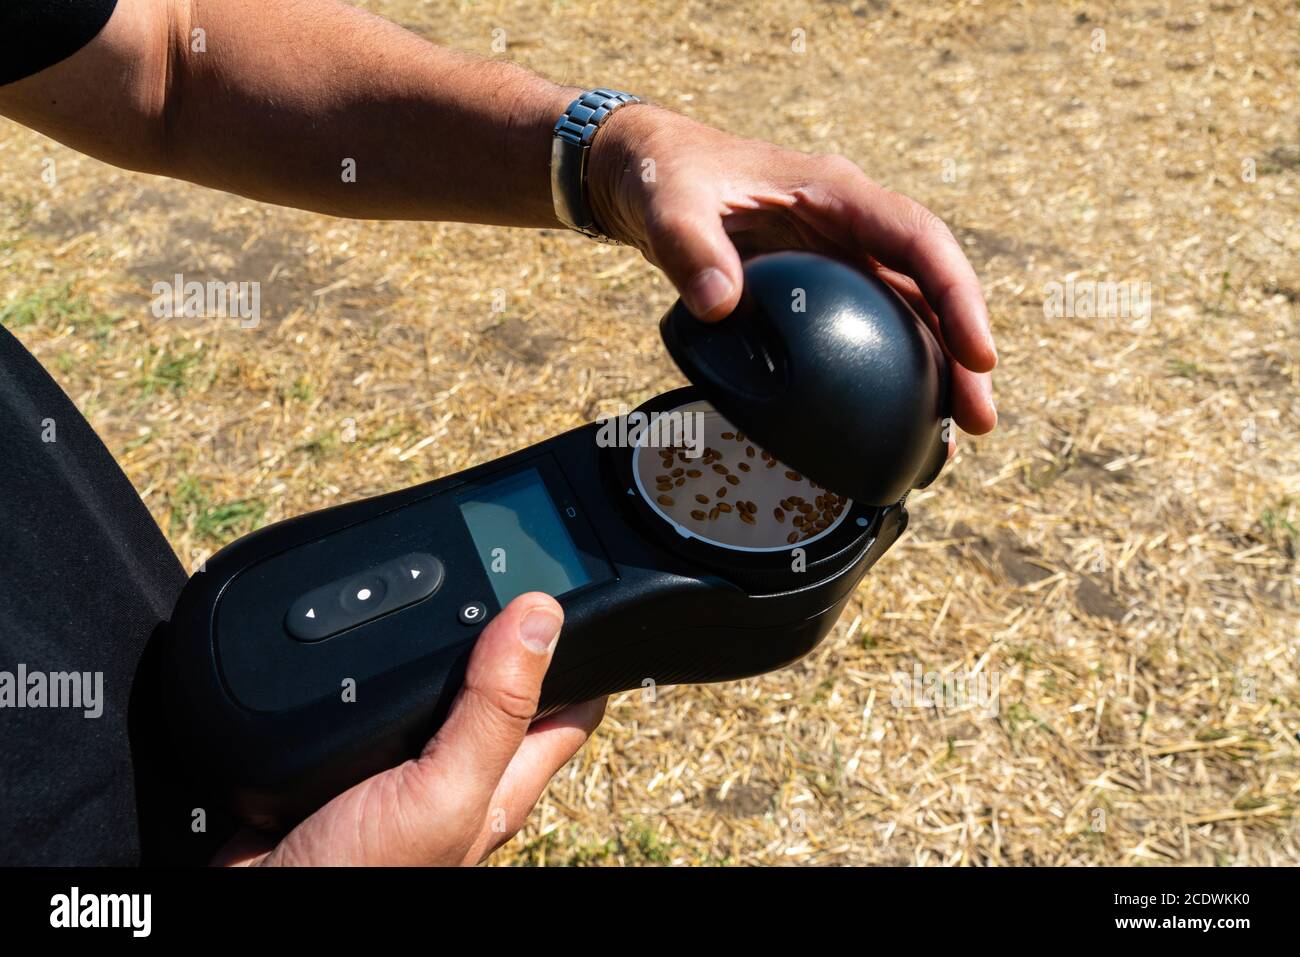 Mobiles Gerät zur Messung der Kornparameter in der Ernte. Intelligente Landwirtschaft und Präzisionslandwirtschaft Stockfoto